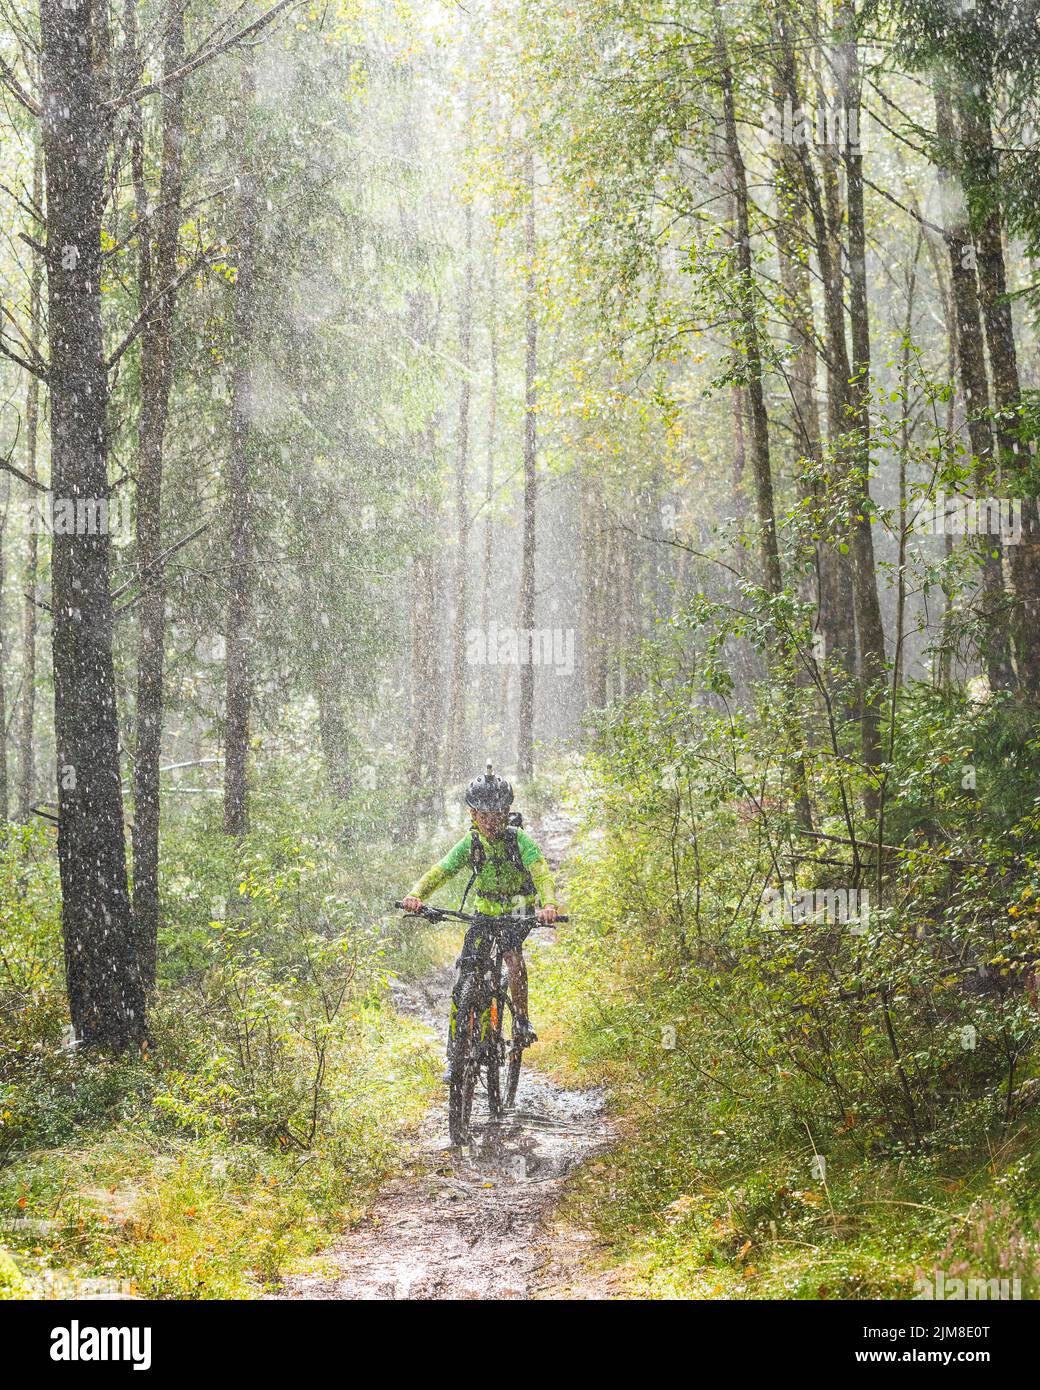 Boy cycle mountainbike in rain Stock Photo